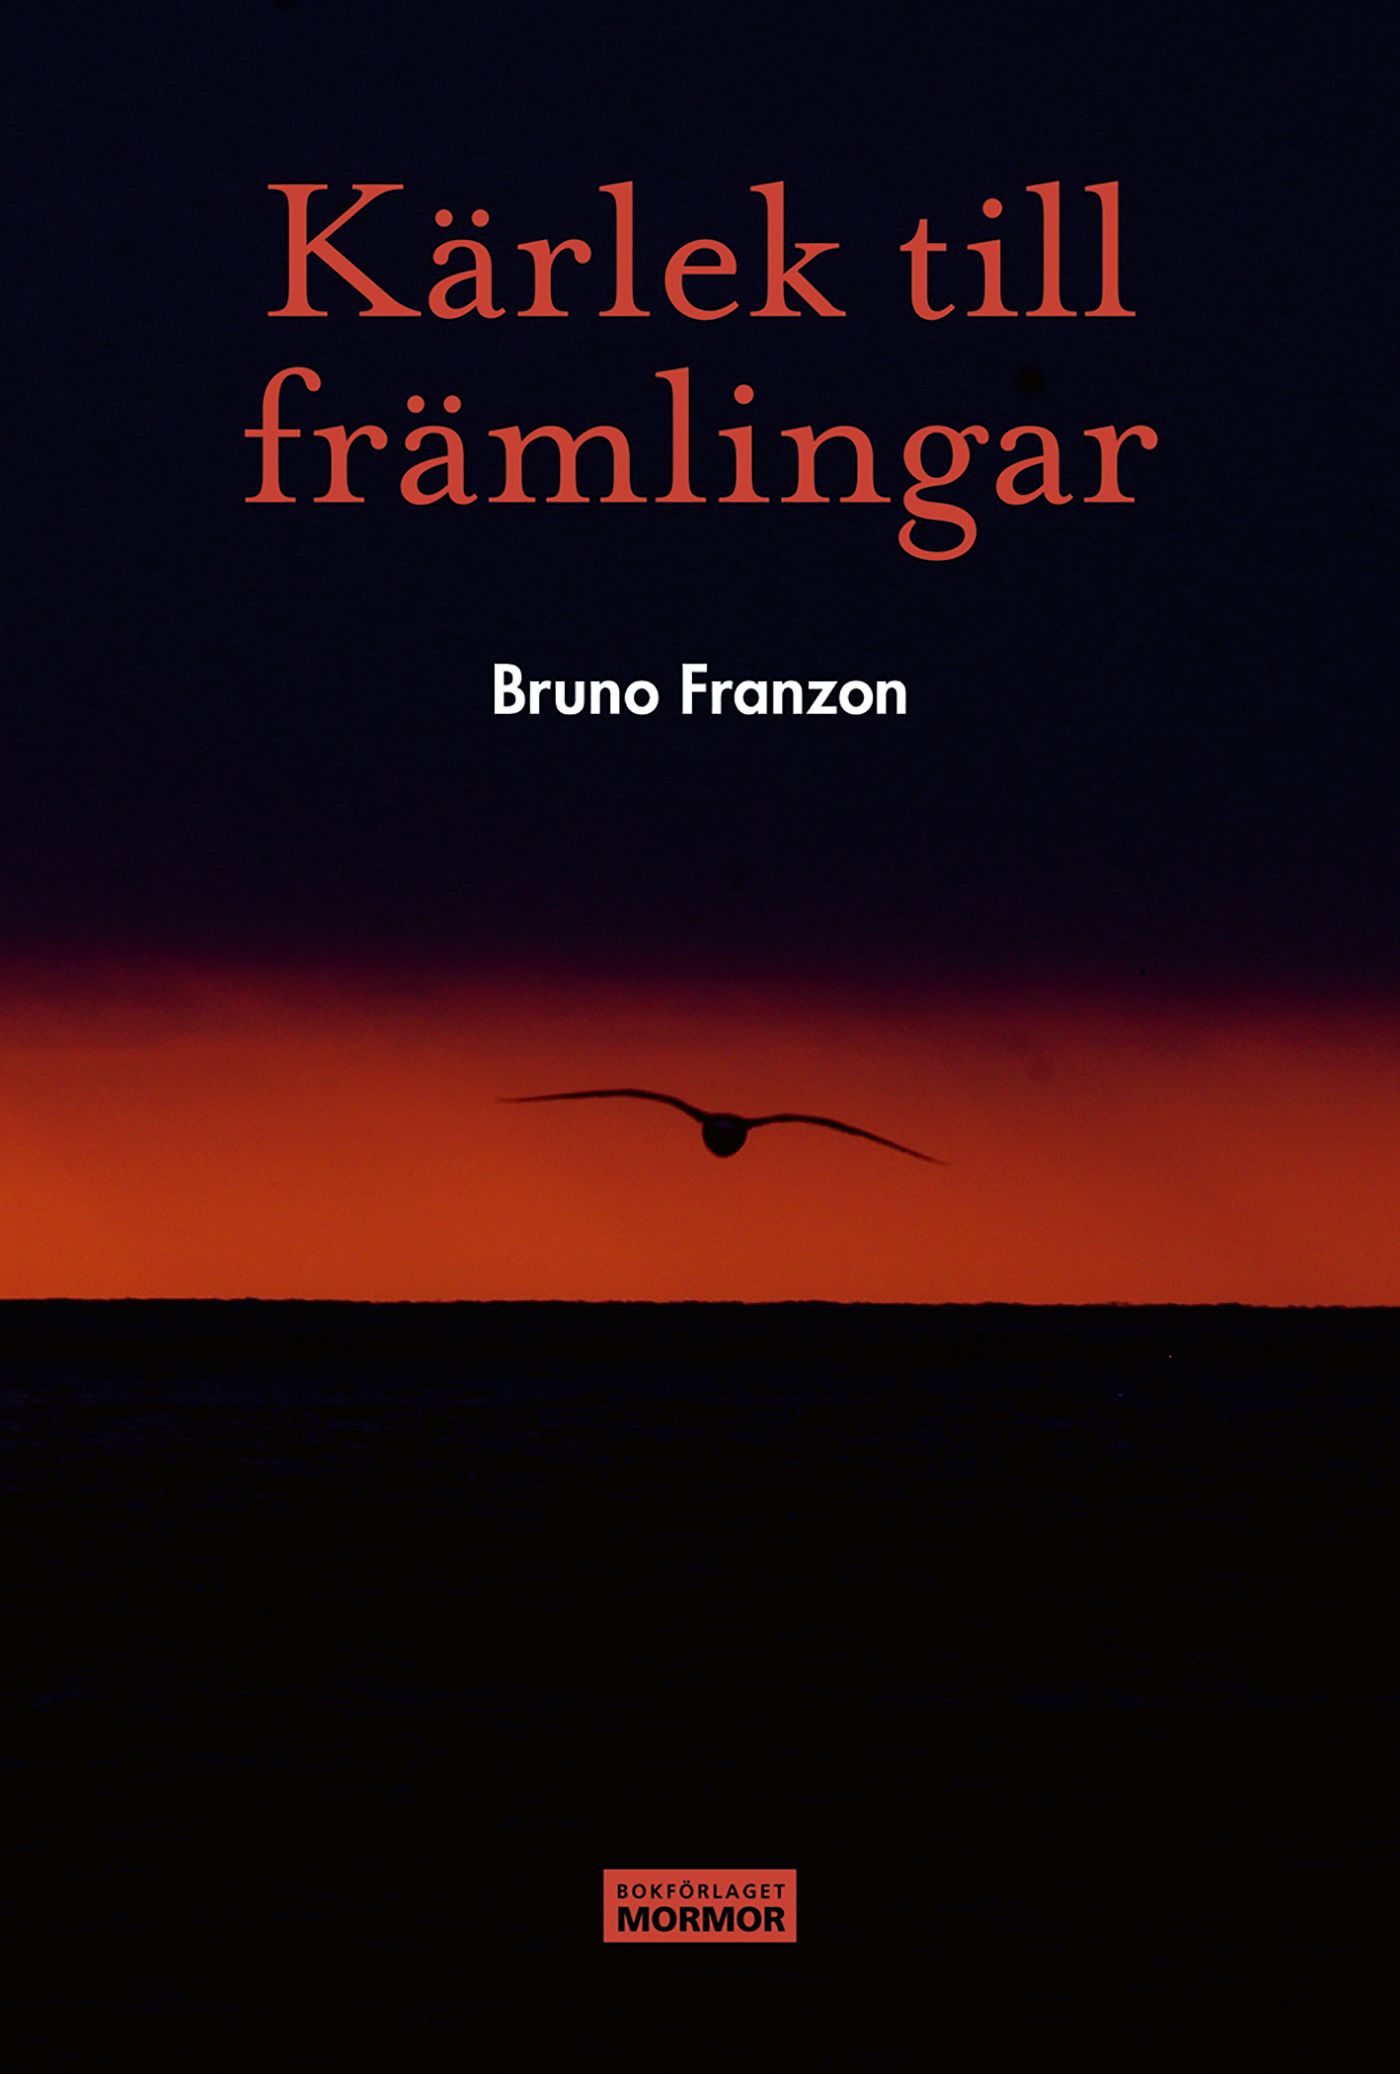 Kärlek till främlingar, e-bok av Bruno Franzon